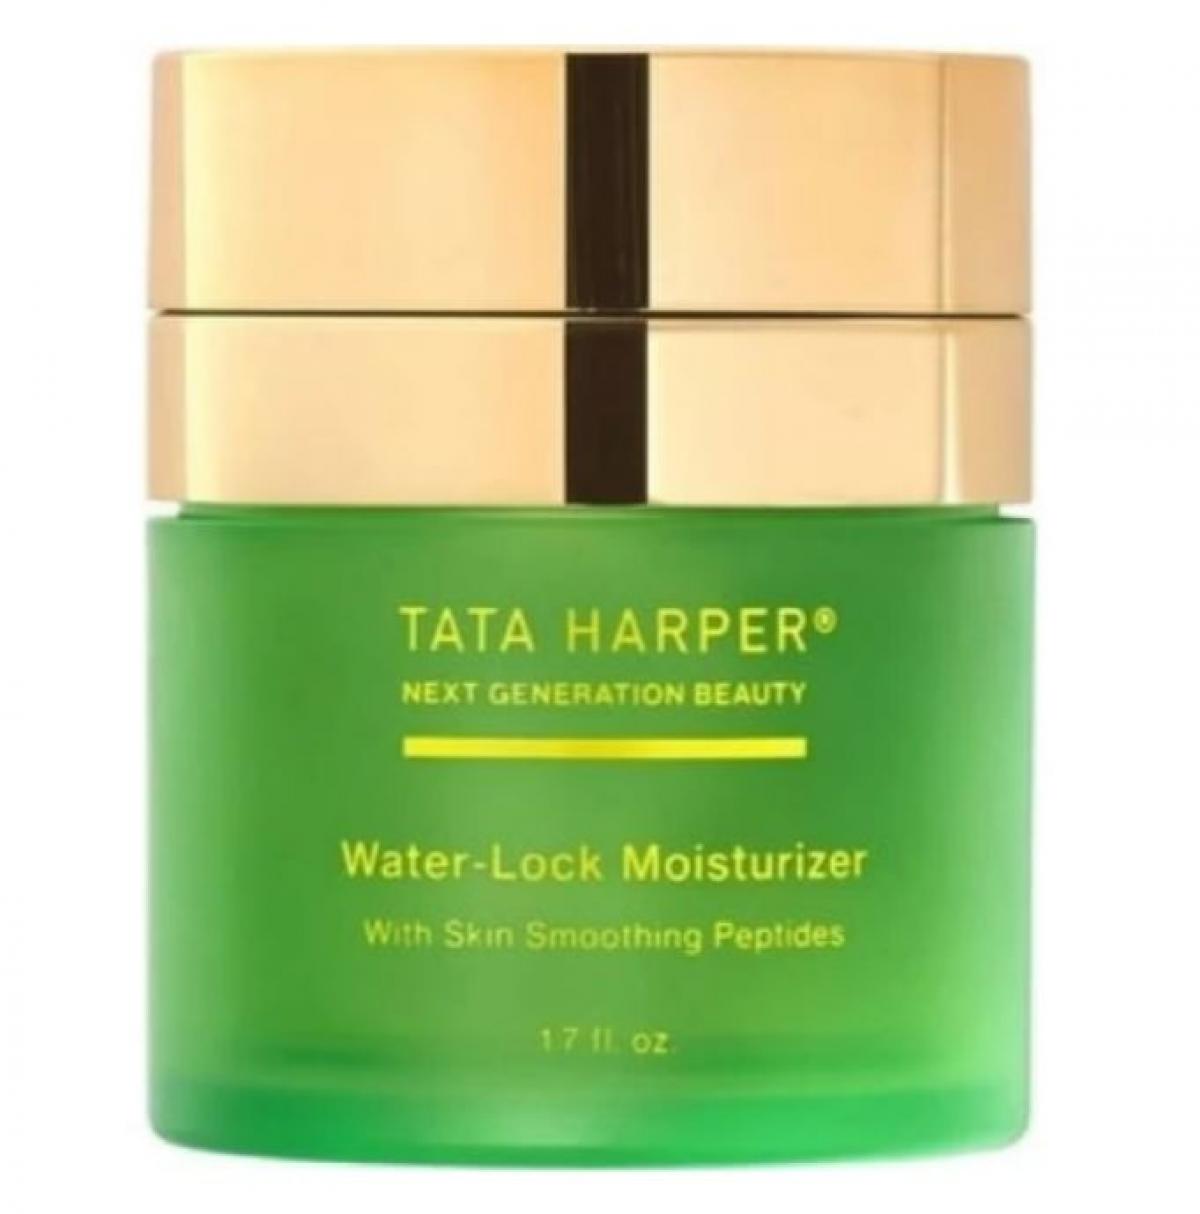 Water-lock moisturizer van Tata Harper skincare